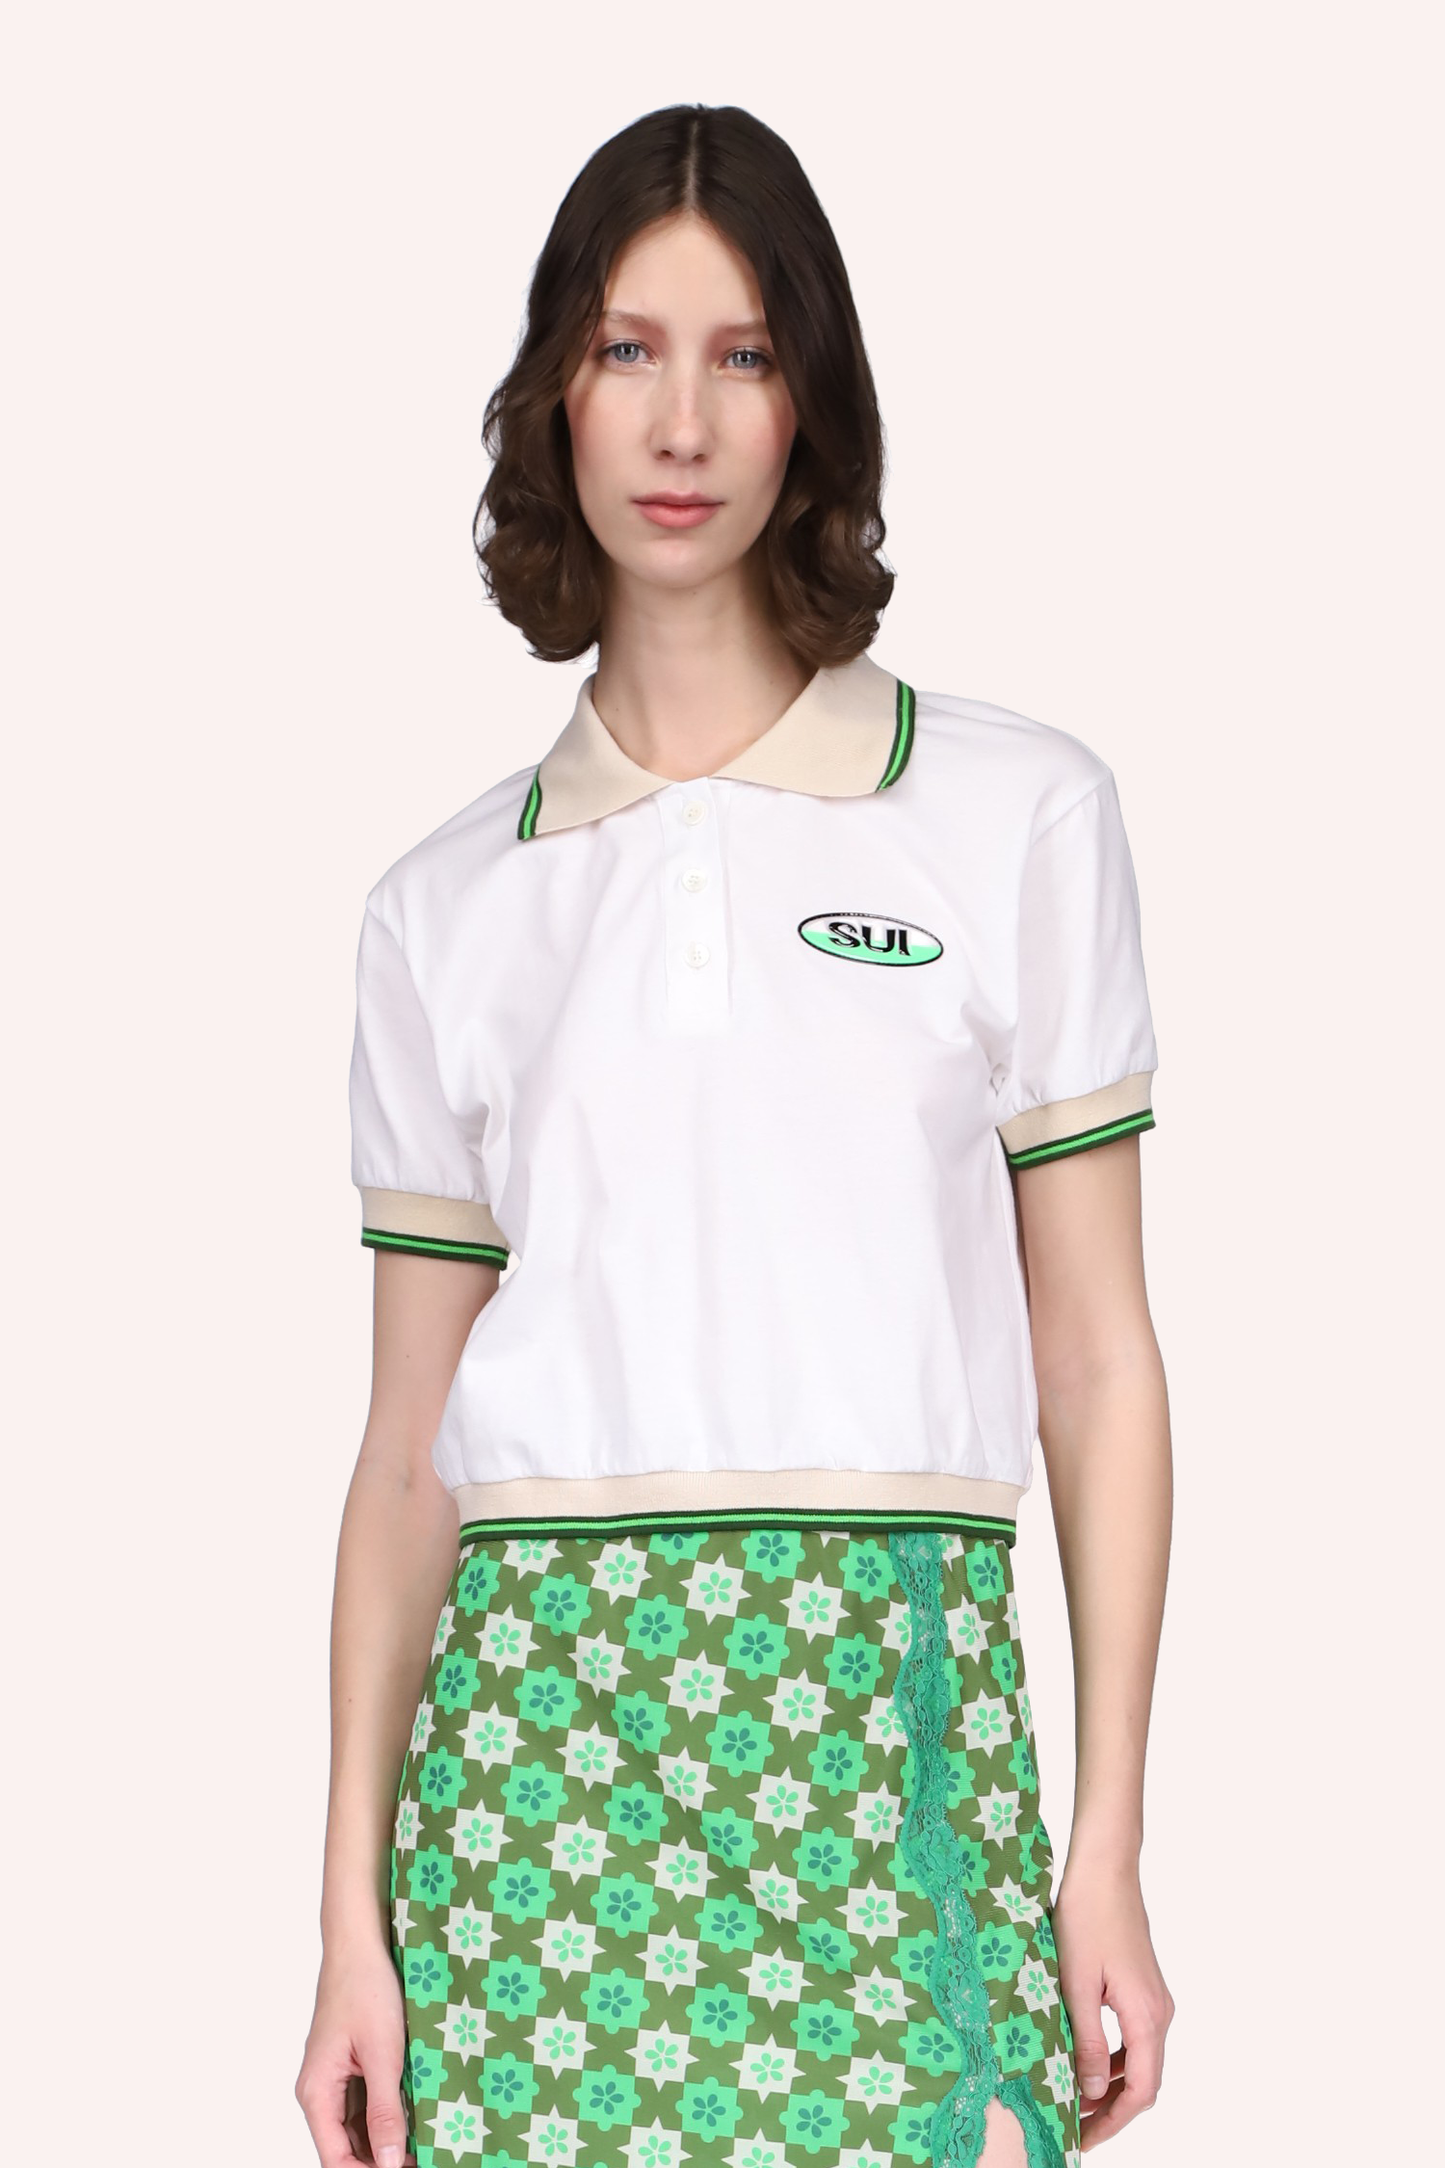 Deco Polo Tee Neon Green, tee-shirt blanc, coutures avec lignes beiges et vertes, étiquette SUI à gauche